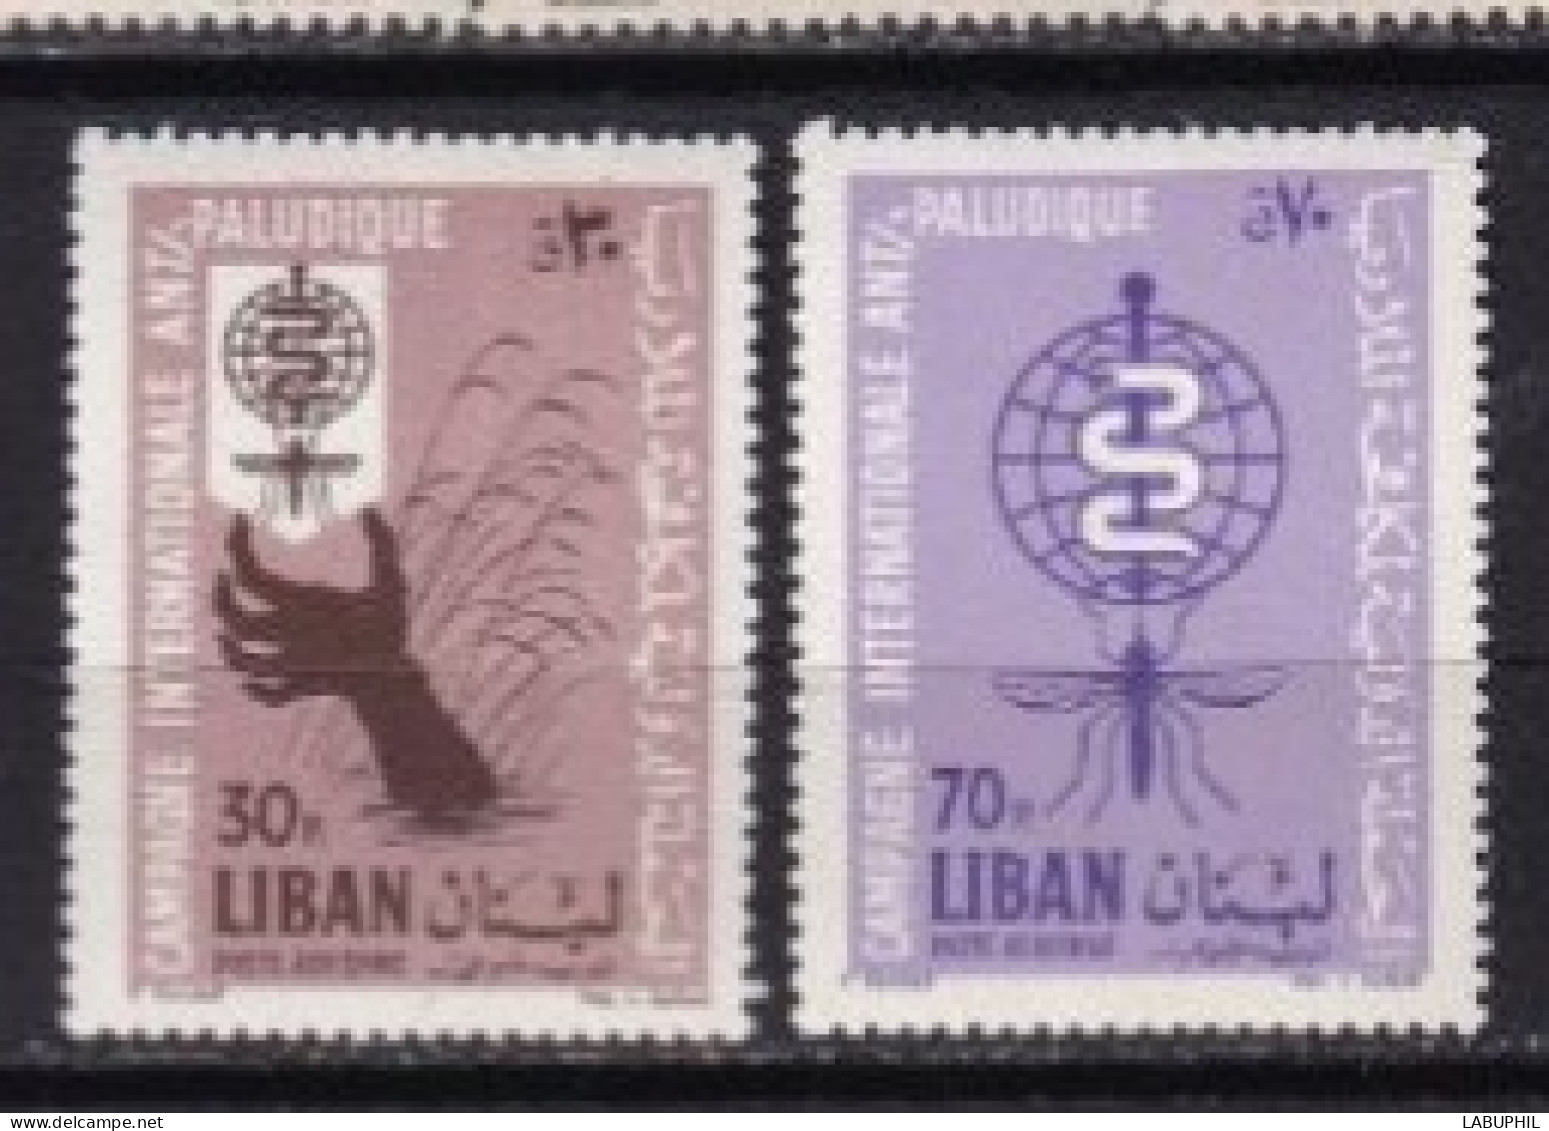 LIBAN MNH ** Poste Aerienne 1962 - Liban